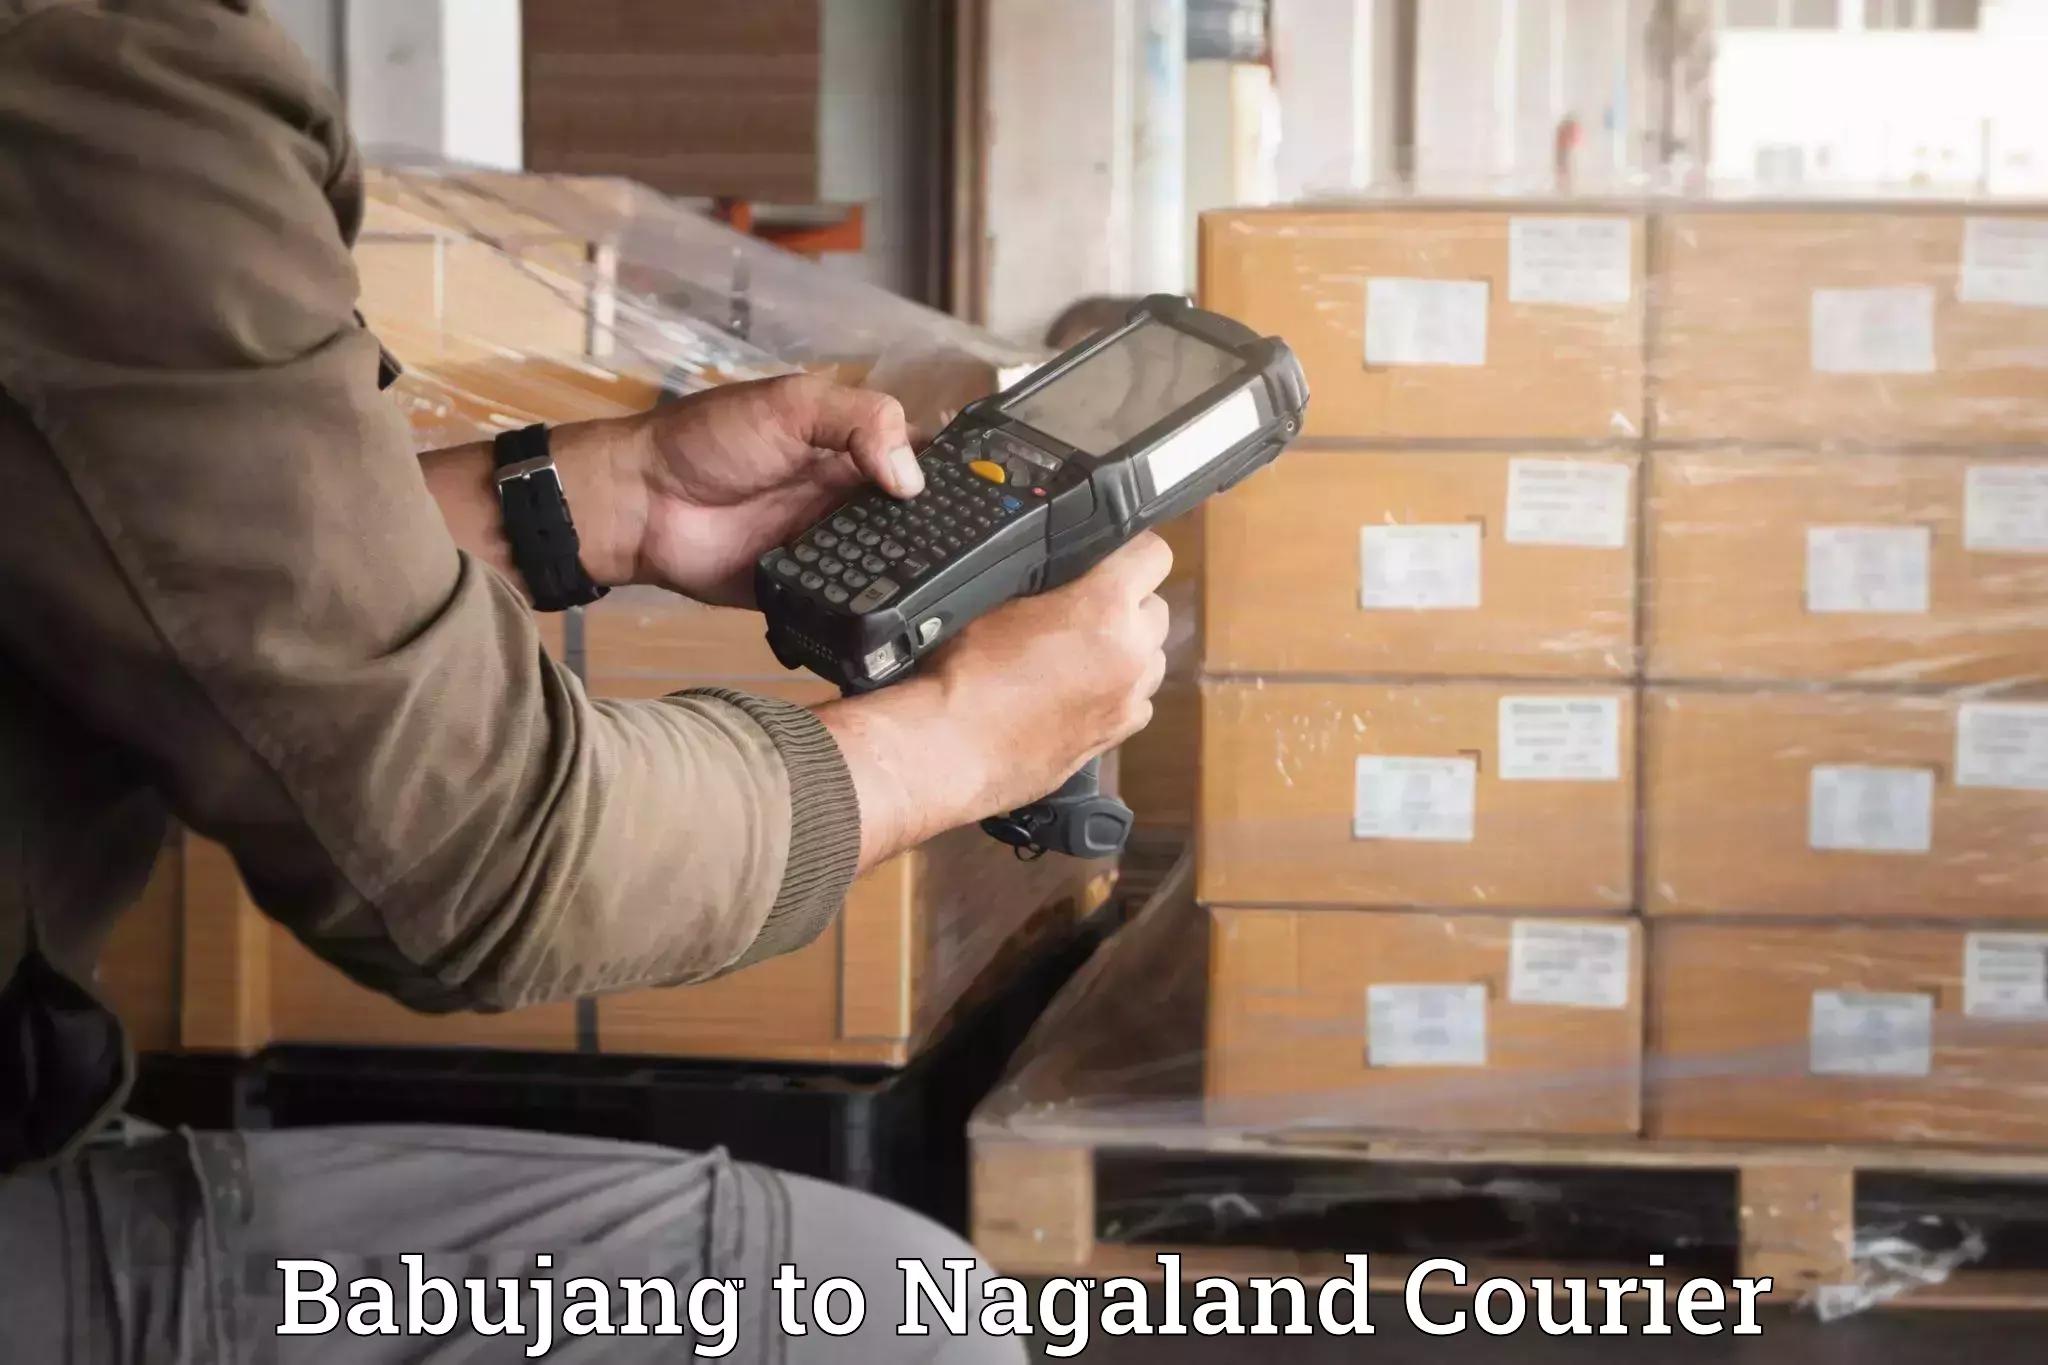 Furniture transport professionals Babujang to Nagaland